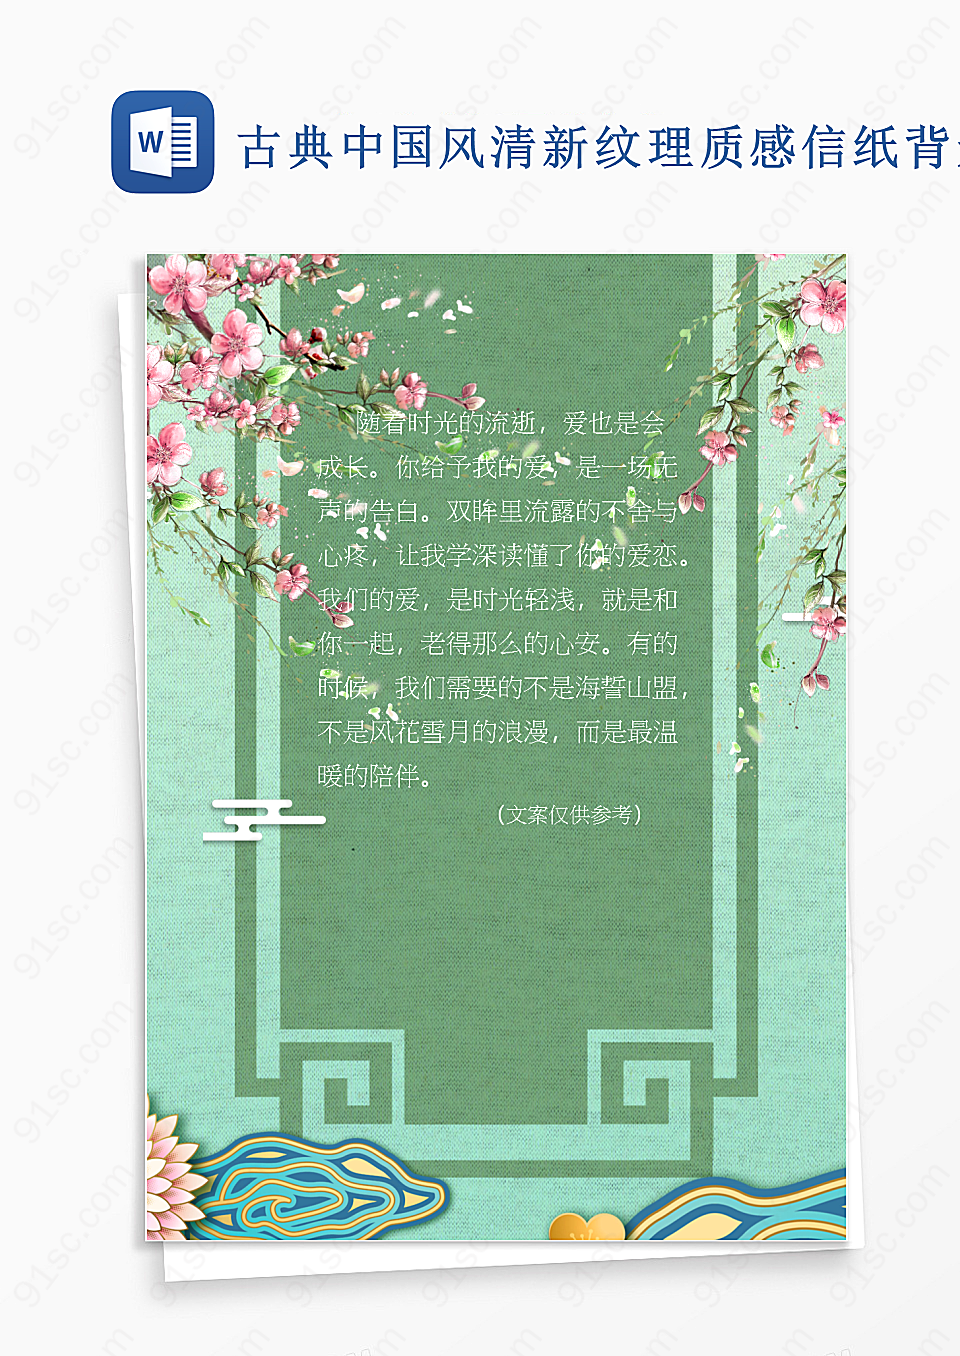 古典中国风清新纹理质感信纸背景设计